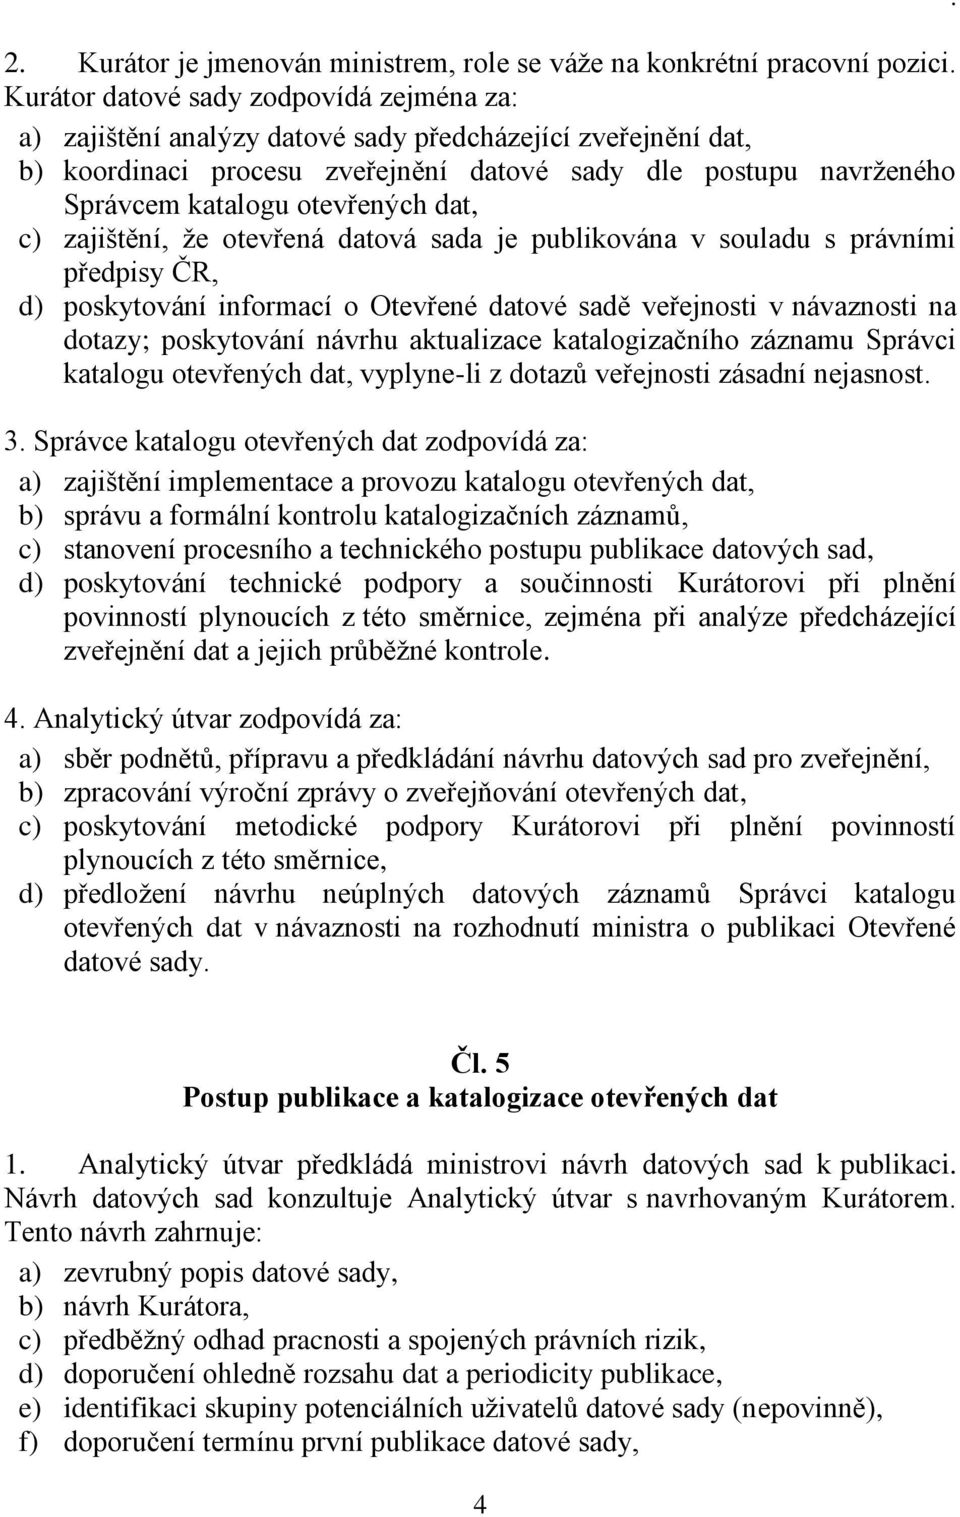 otevřených dat, c) zajištění, že otevřená datová sada je publikována v souladu s právními předpisy ČR, d) poskytování informací o Otevřené datové sadě veřejnosti v návaznosti na dotazy; poskytování